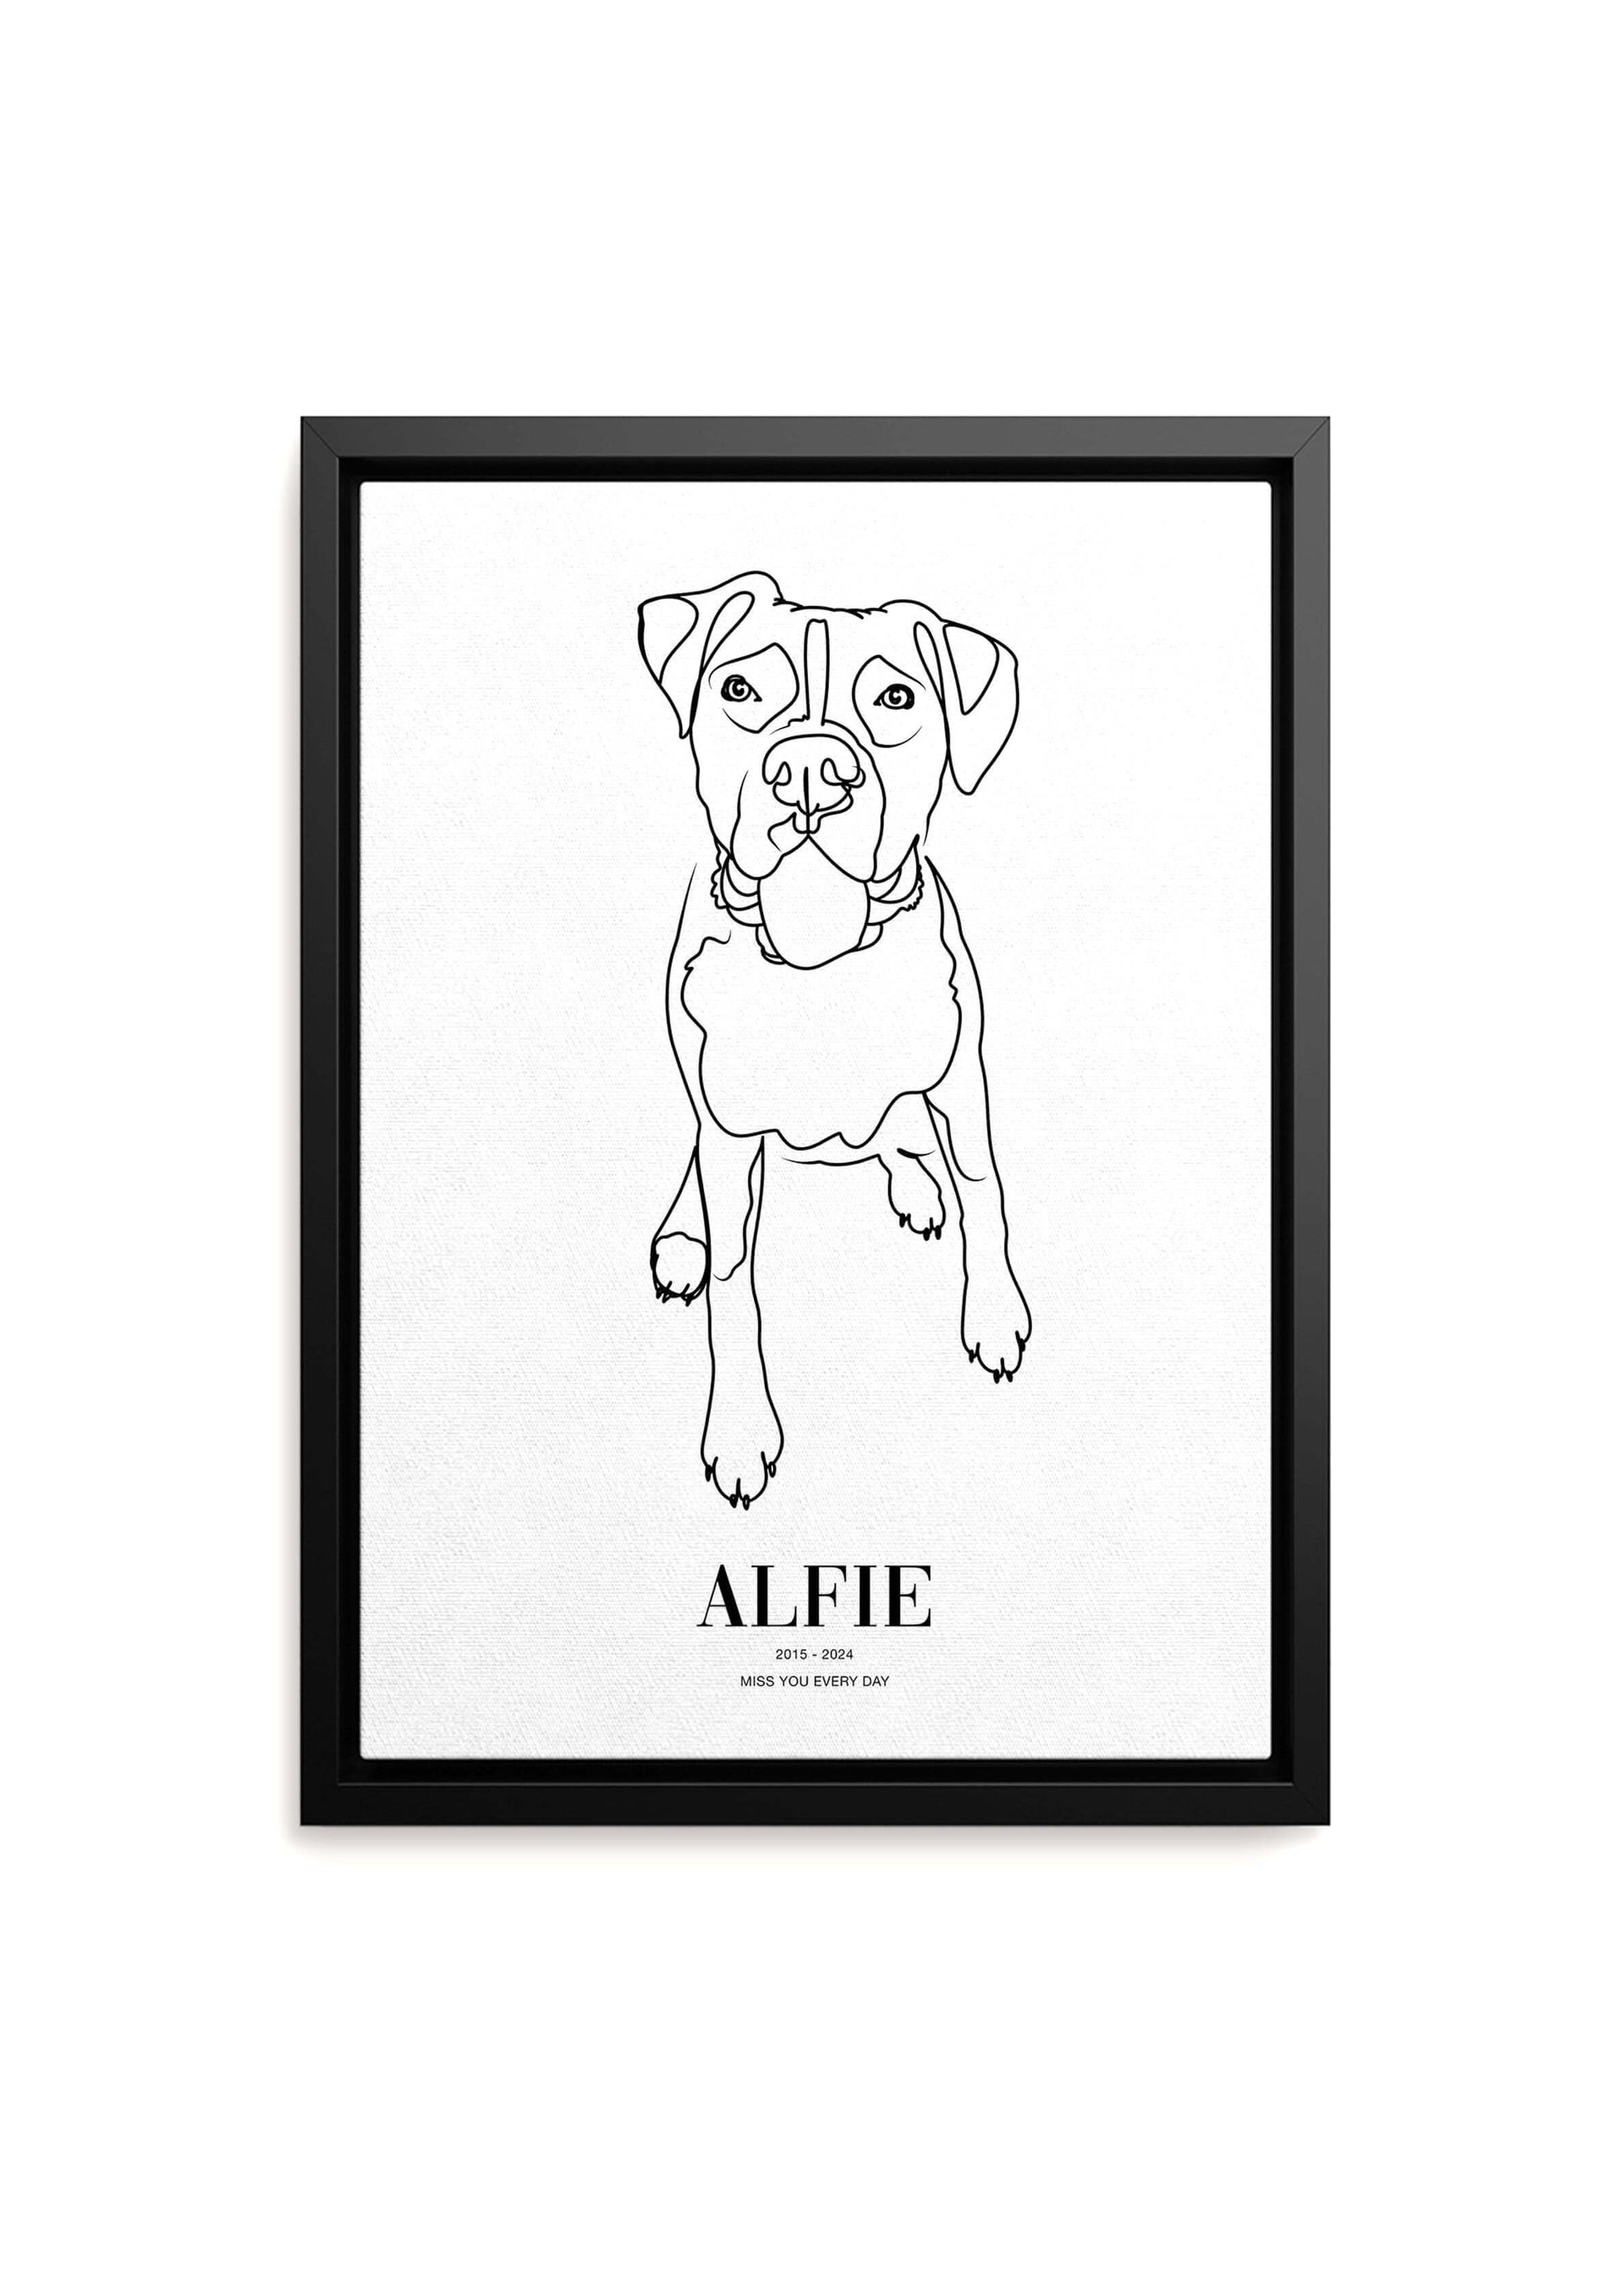 Dog memorial pet art line drawing on black framed canvas.